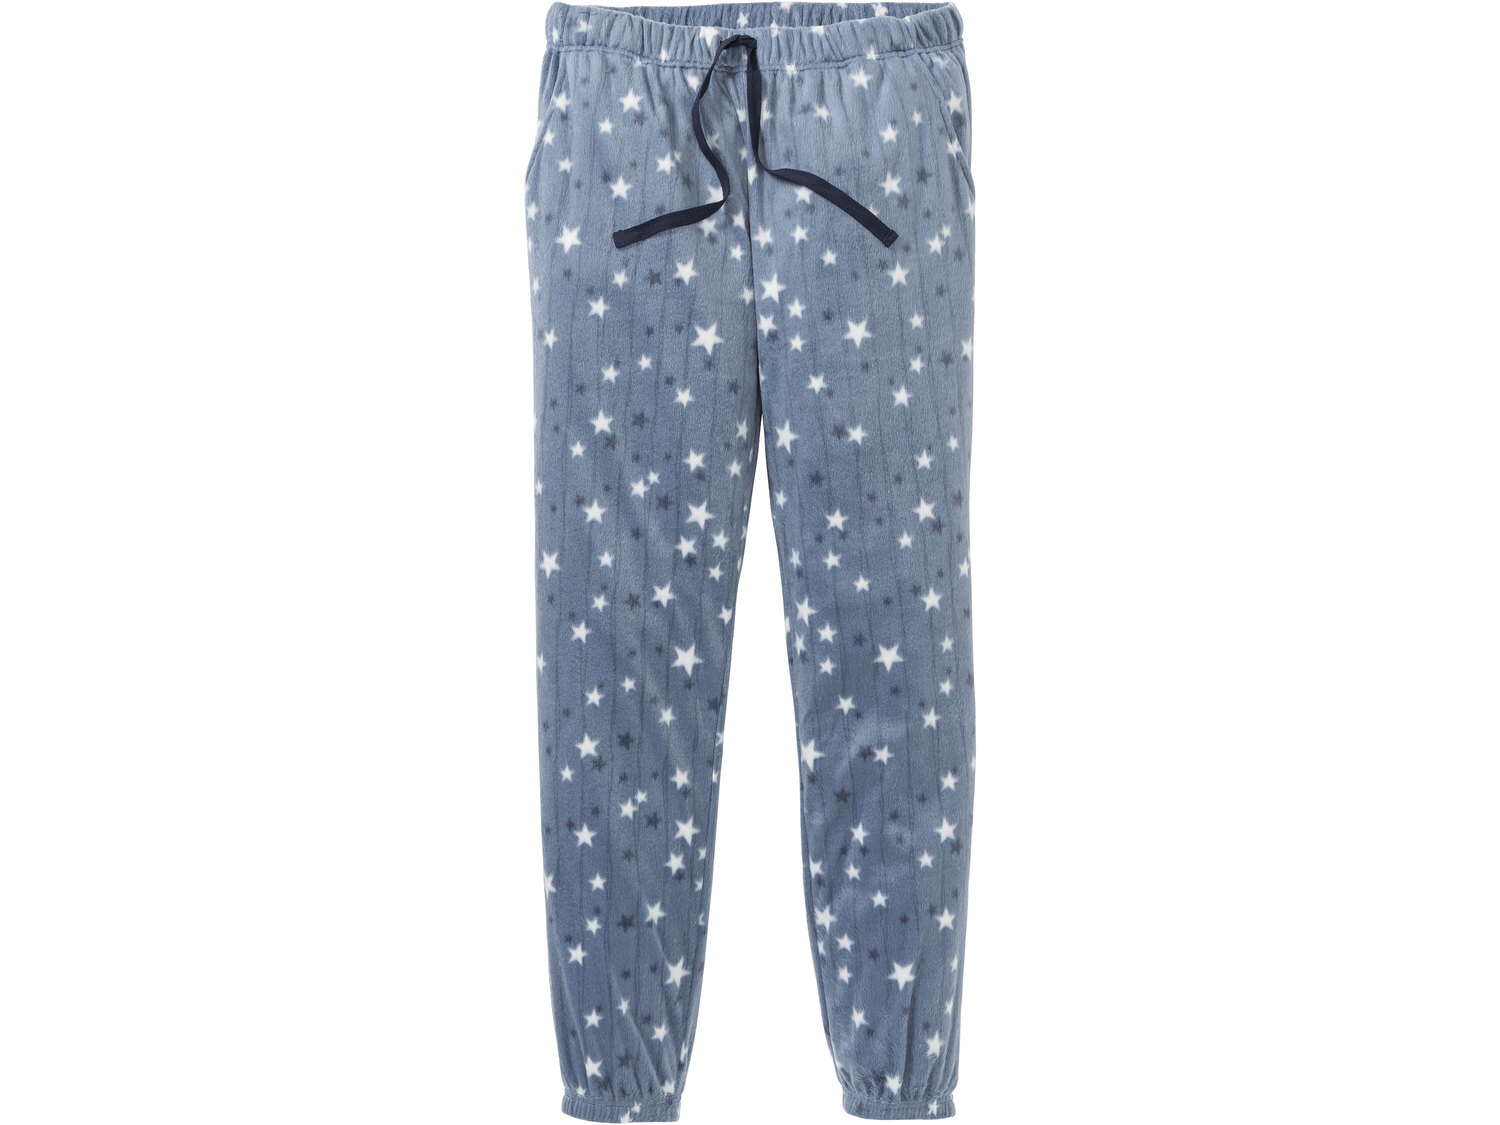 Piżama , cena 34,99 PLN 
- koszulka 100% bawełny
- spodnie z polaru
- rozmiary: ...